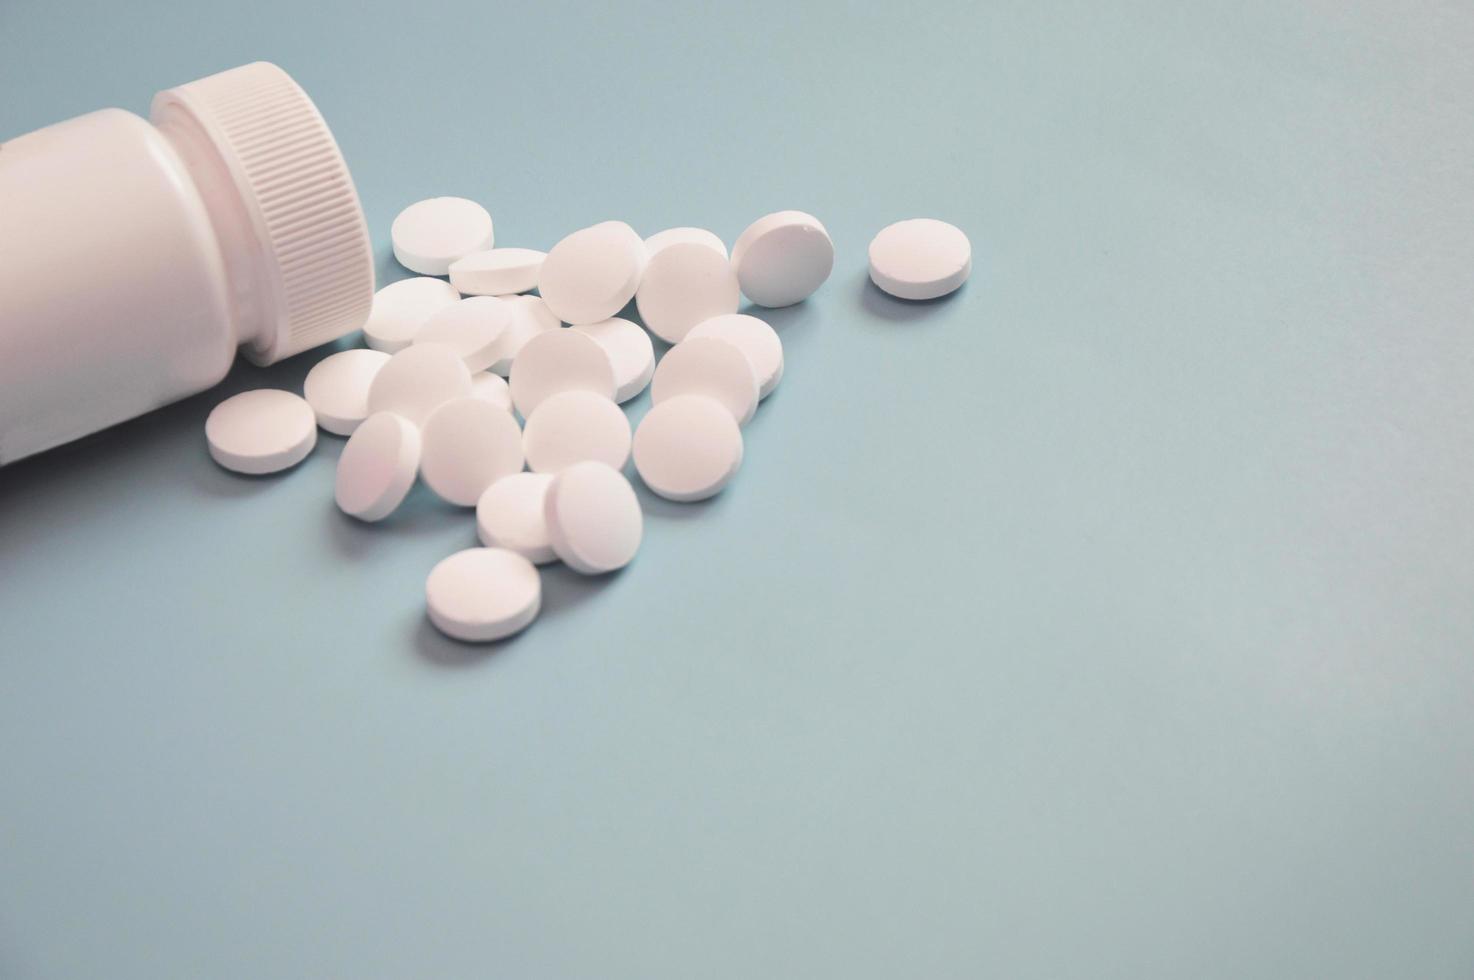 pot en plastique blanc avec médicament et pilules blanches dispersées sur fond bleu. notion de soins de santé. espace libre pour le texte. photo